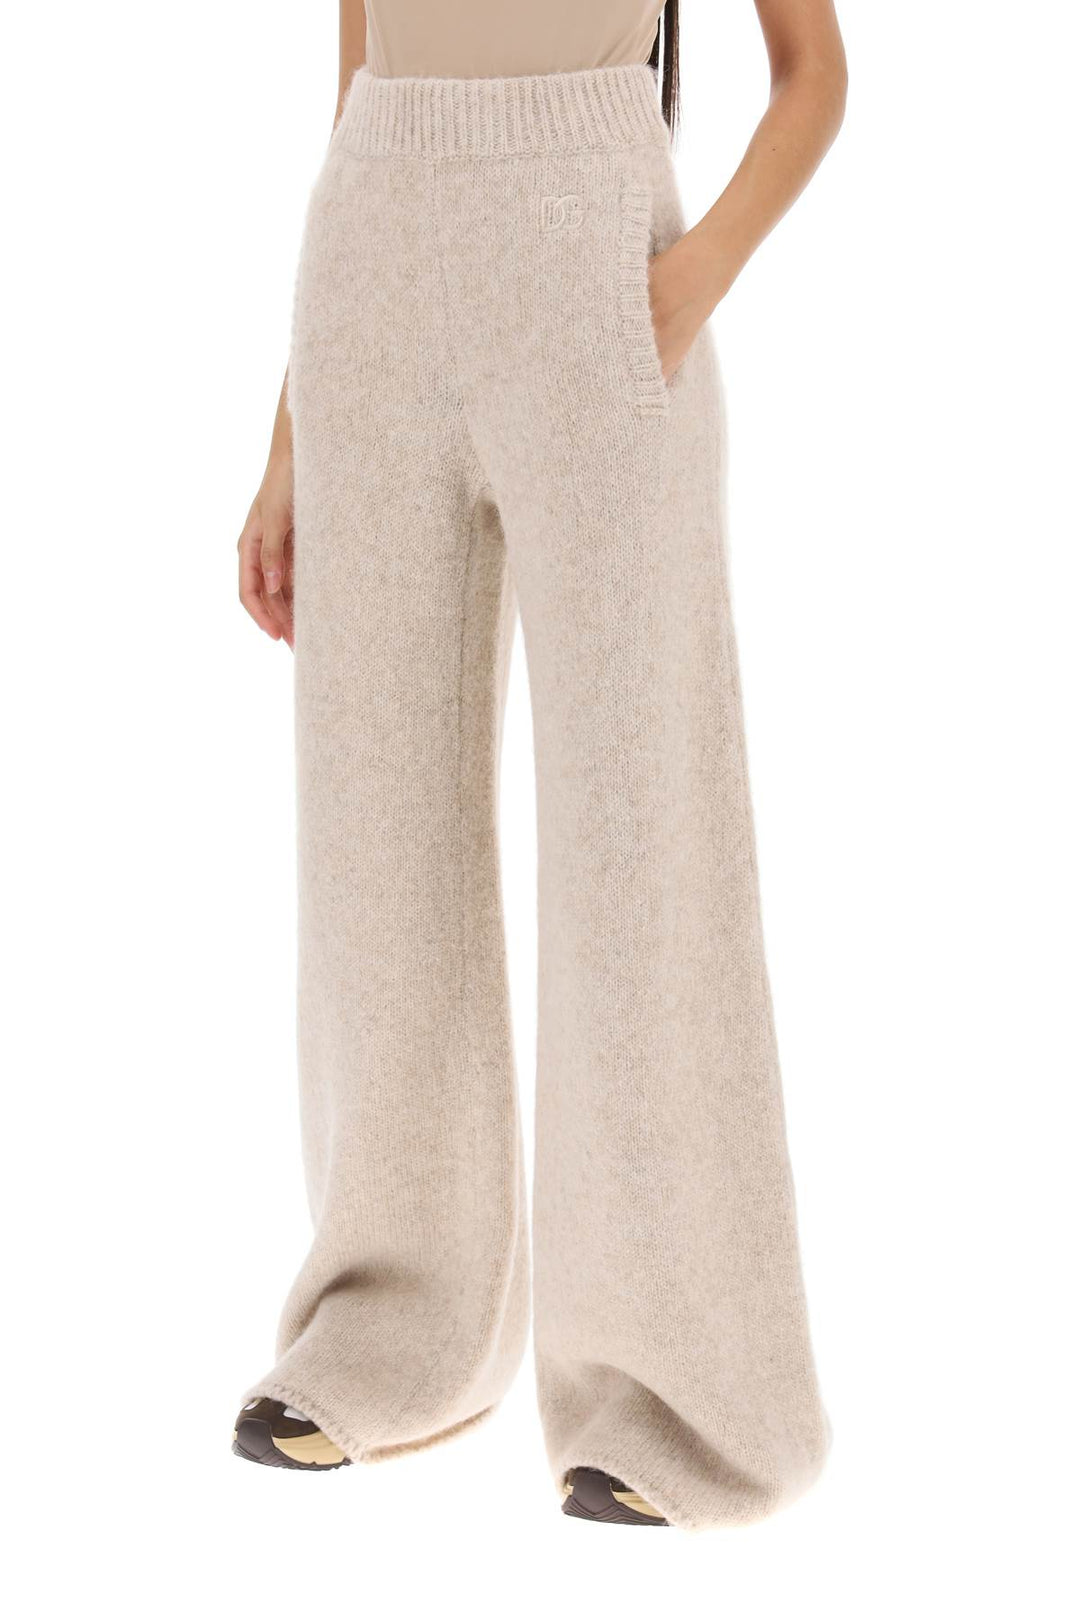 Dolce & gabbana llama knit flared pants-3